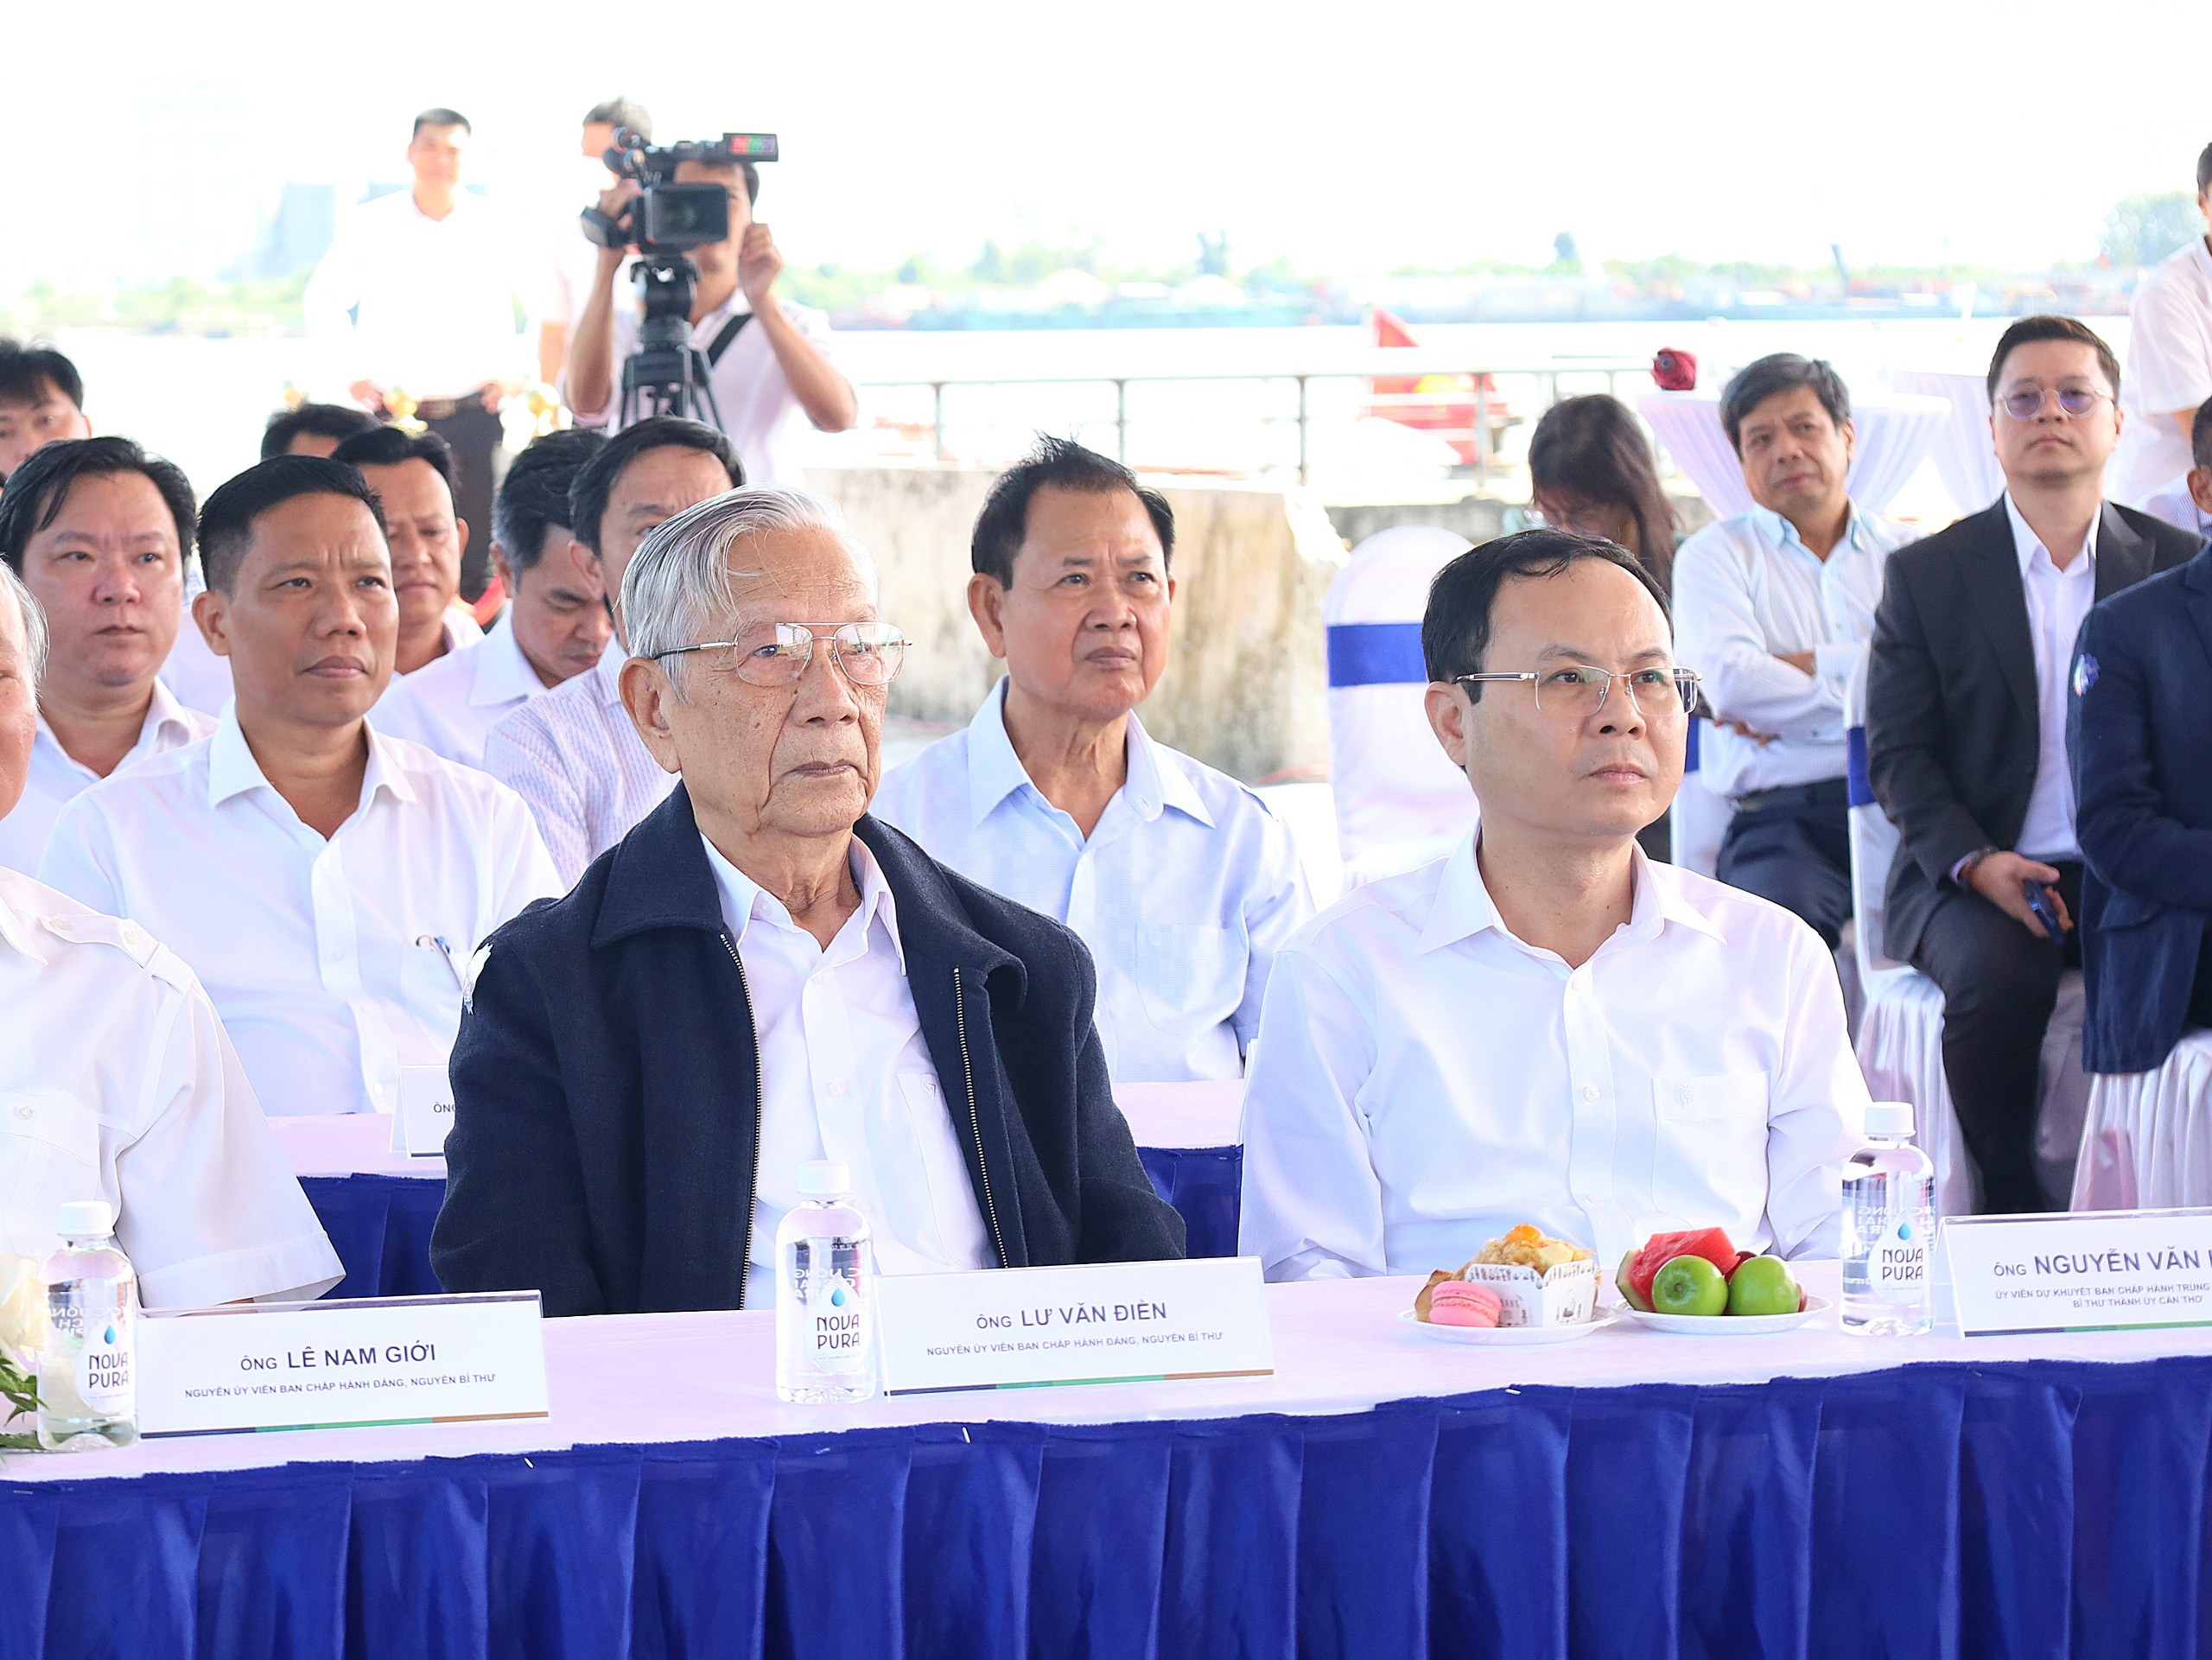 ông Nguyễn Văn Hiếu - Ủy viên dự khuyết Ban Chấp hành Trung ương Đảng, Bí thư Thành ủy Cần Thơ tham dự sự kiện.